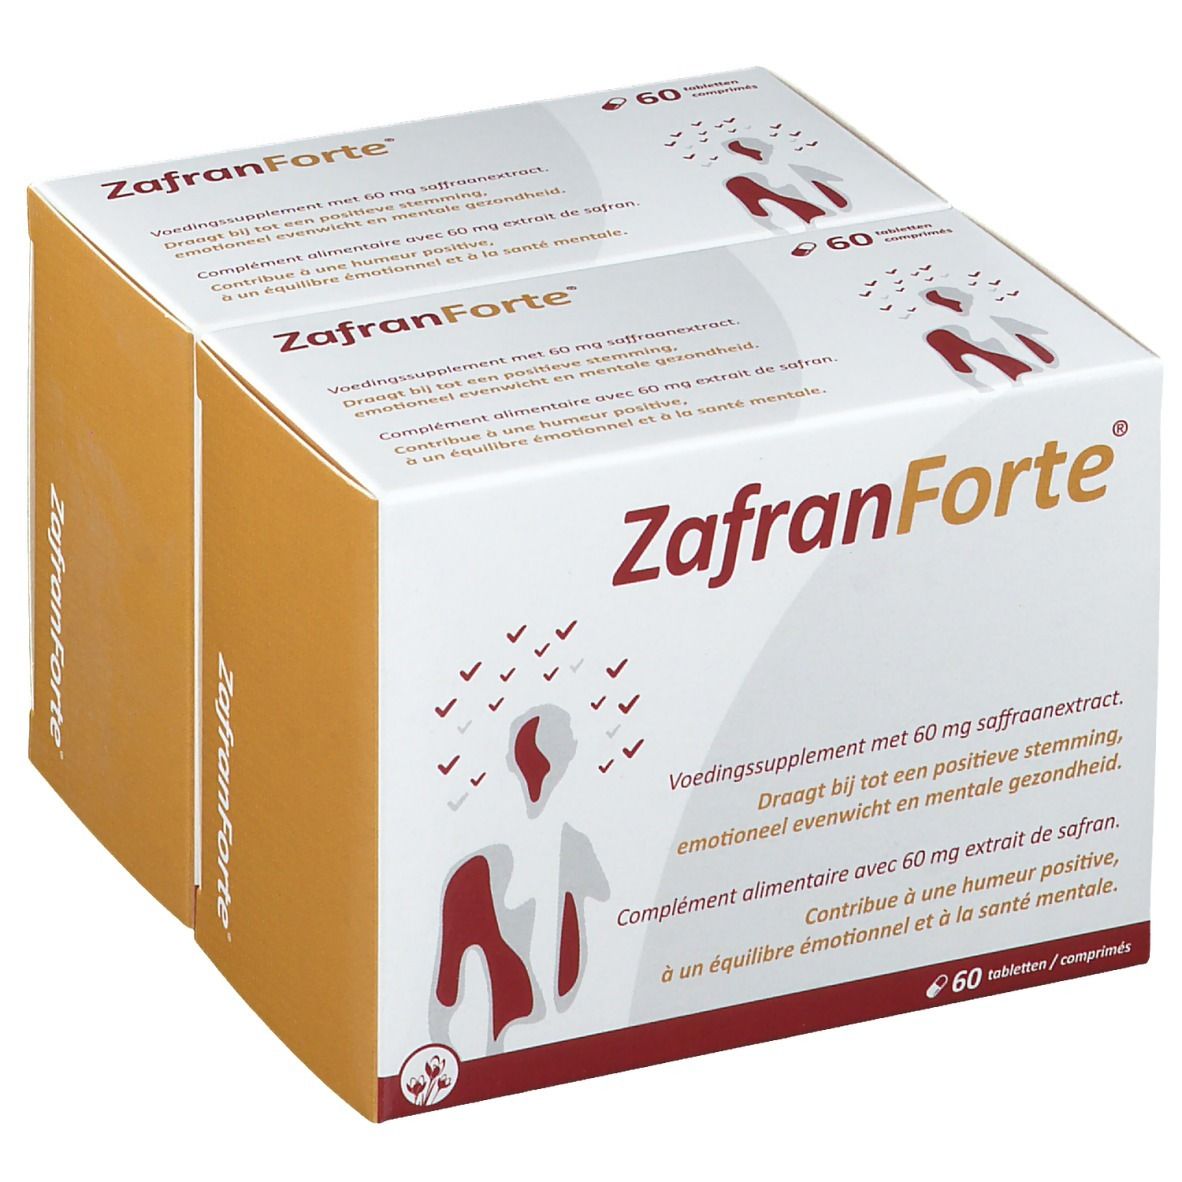 Image of Zafran Forte